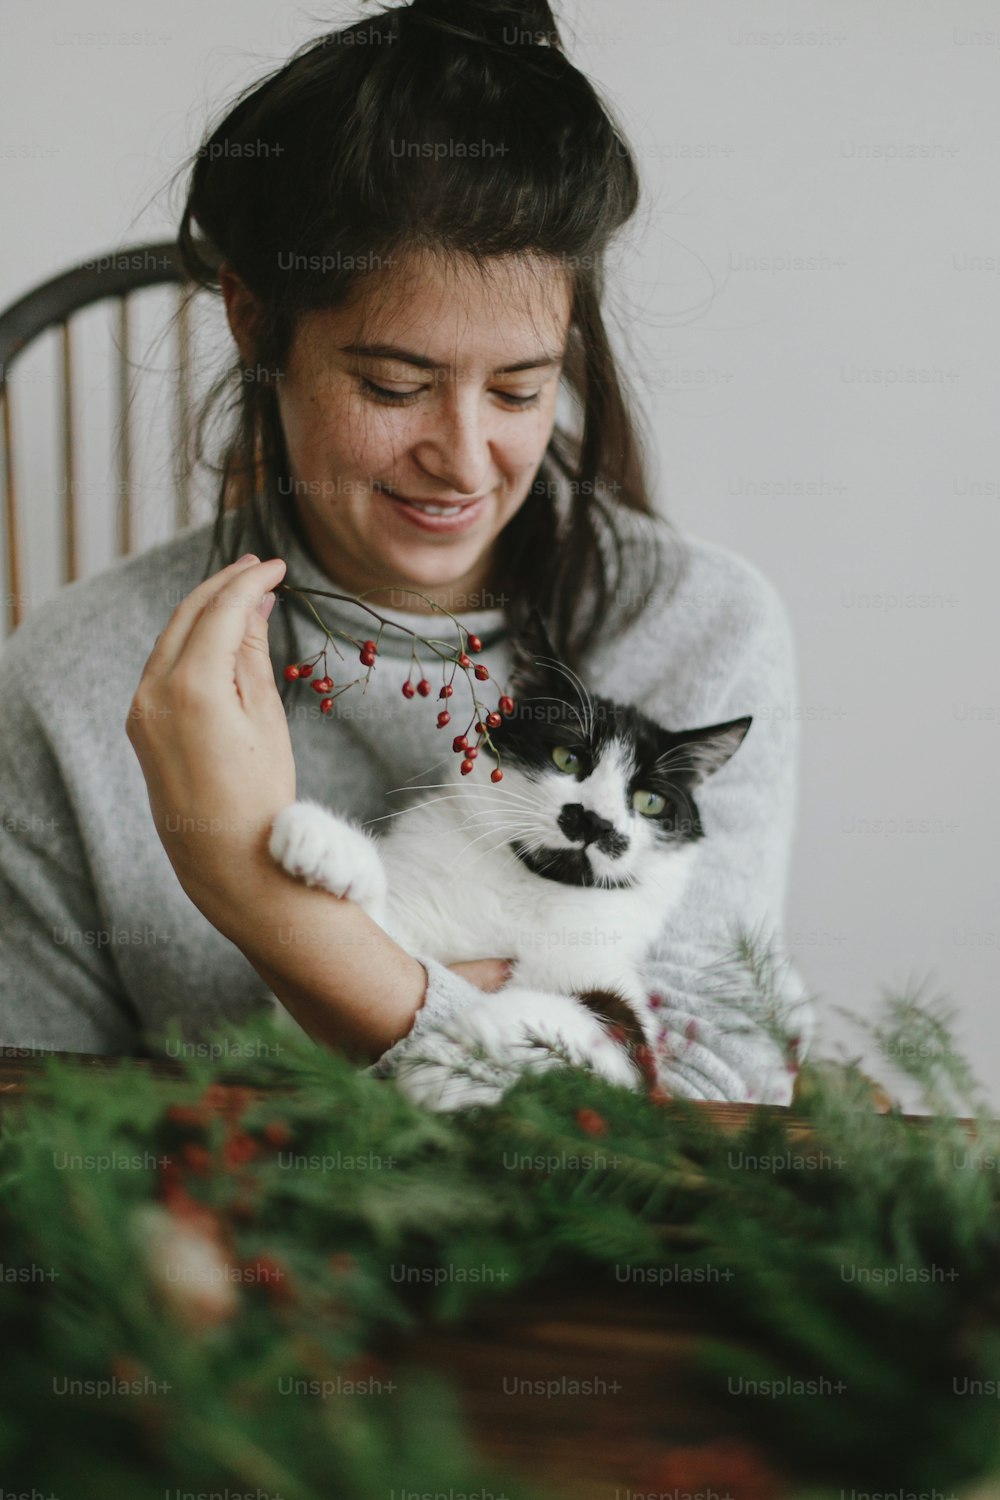 Realizzazione di una ghirlanda di Natale con un simpatico gatto a casa, avvento festivo. Donna felice che fa la ghirlanda di natale con l'adorabile aiutante felino, tenendo bacche rosse e rami verdi. Immagine autentica ed elegante